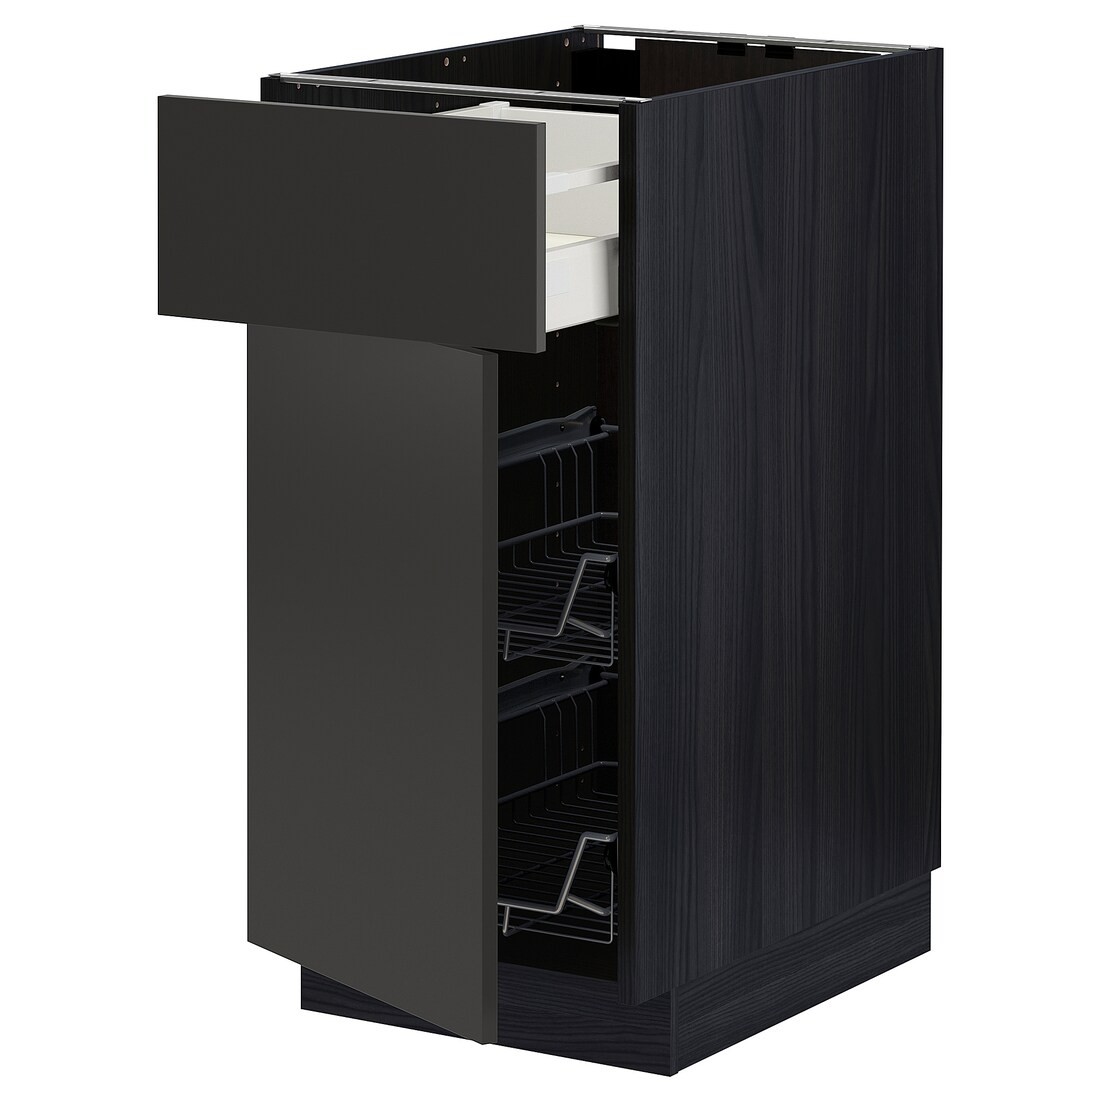 IKEA METOD МЕТОД / MAXIMERA МАКСИМЕРА Наполный шкаф с проволочными корзинами / ящиком / дверью, черный / Nickebo матовый антрацит, 40x60 см 89498077 894.980.77